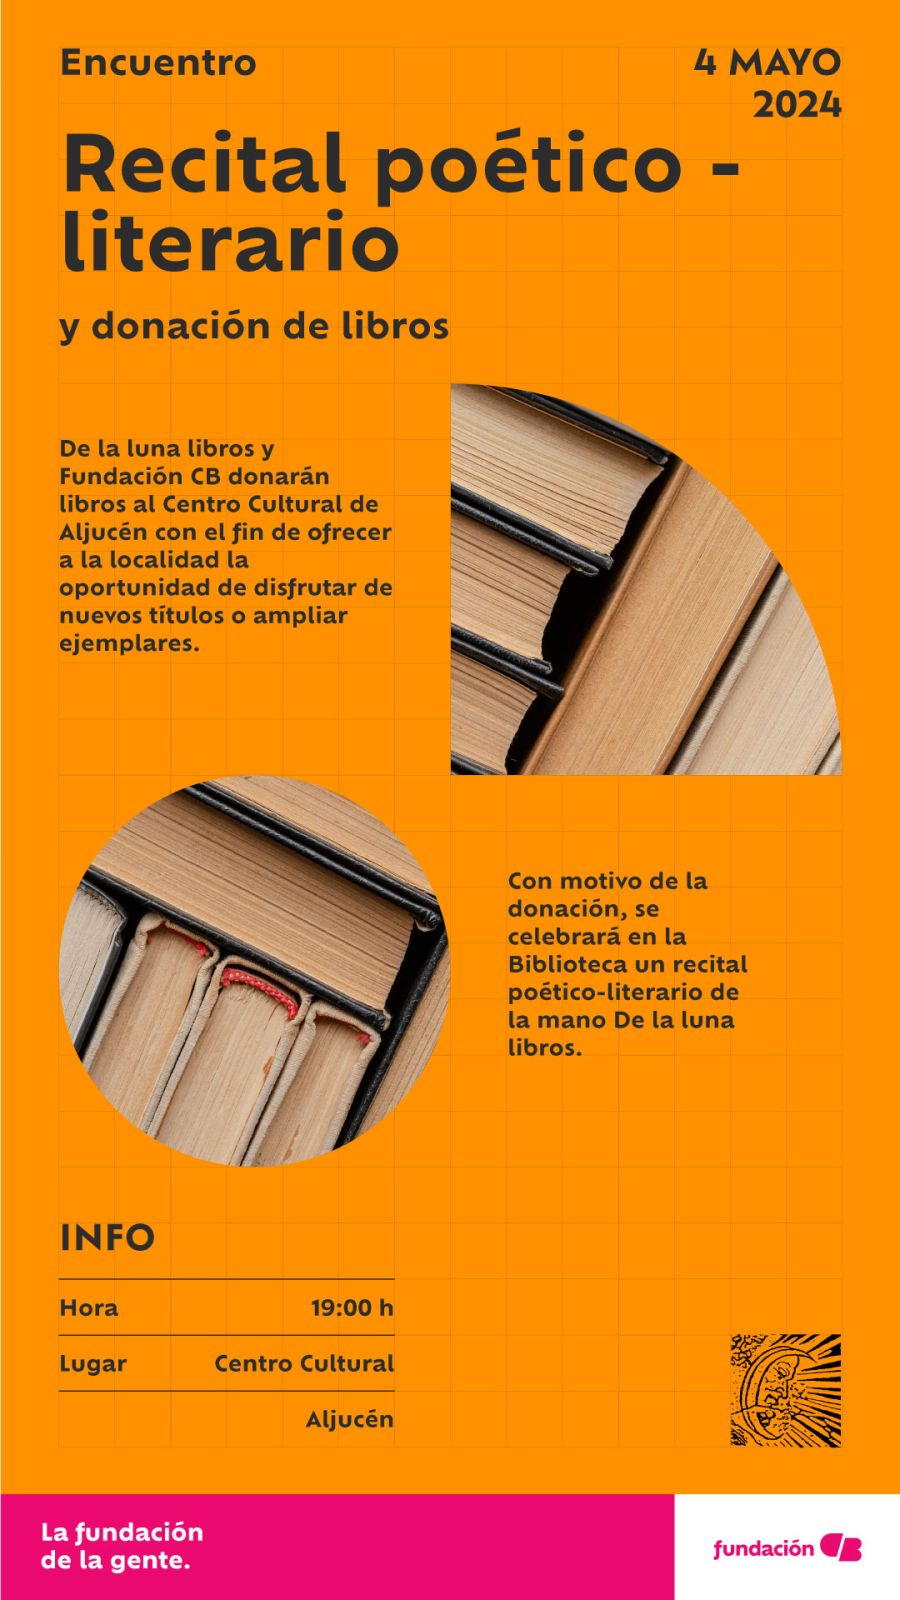 Donación de libros y recital poético-literario en Aljucén (Badajoz)